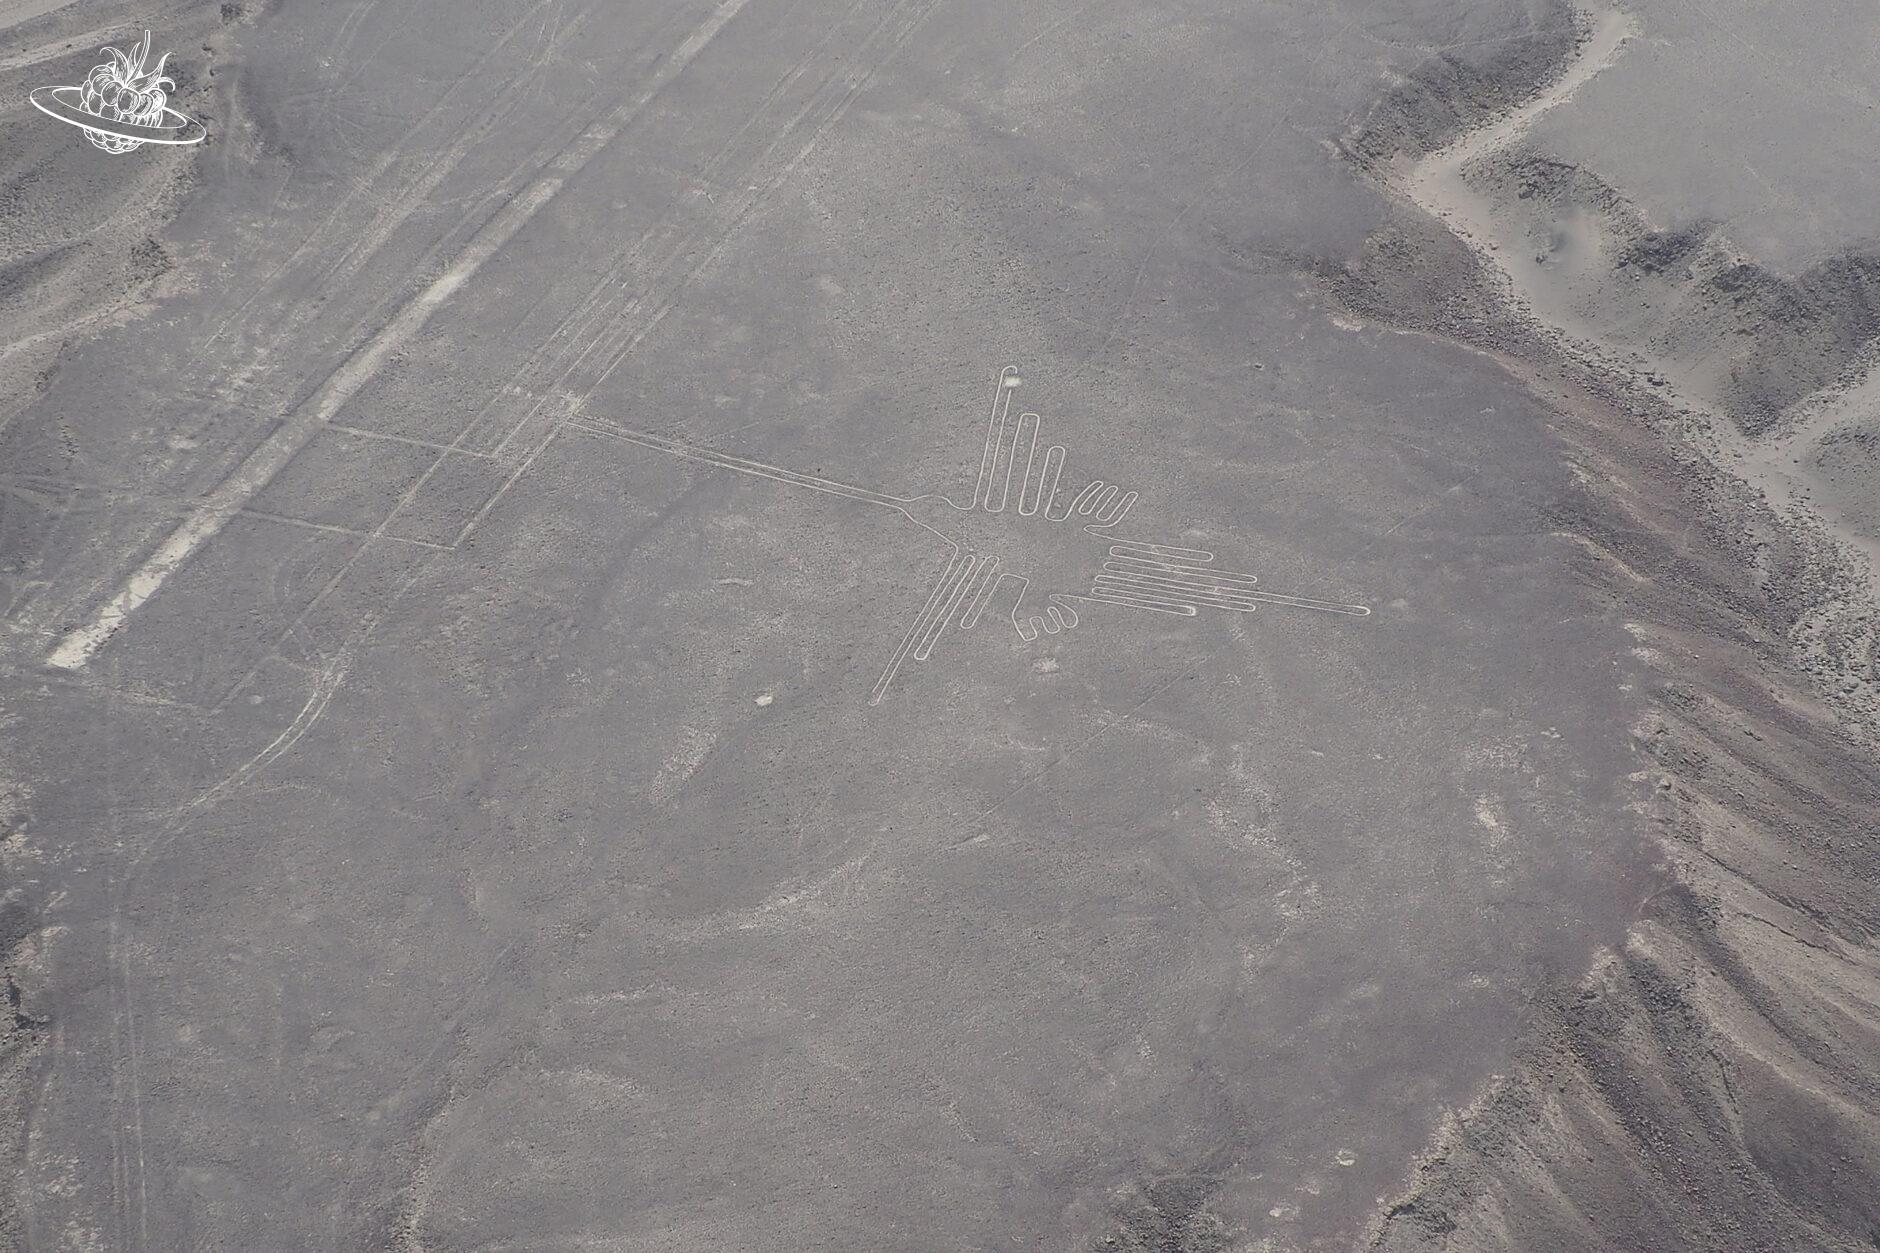 Die Figur "Kolibri" in der Wüste von Nazca